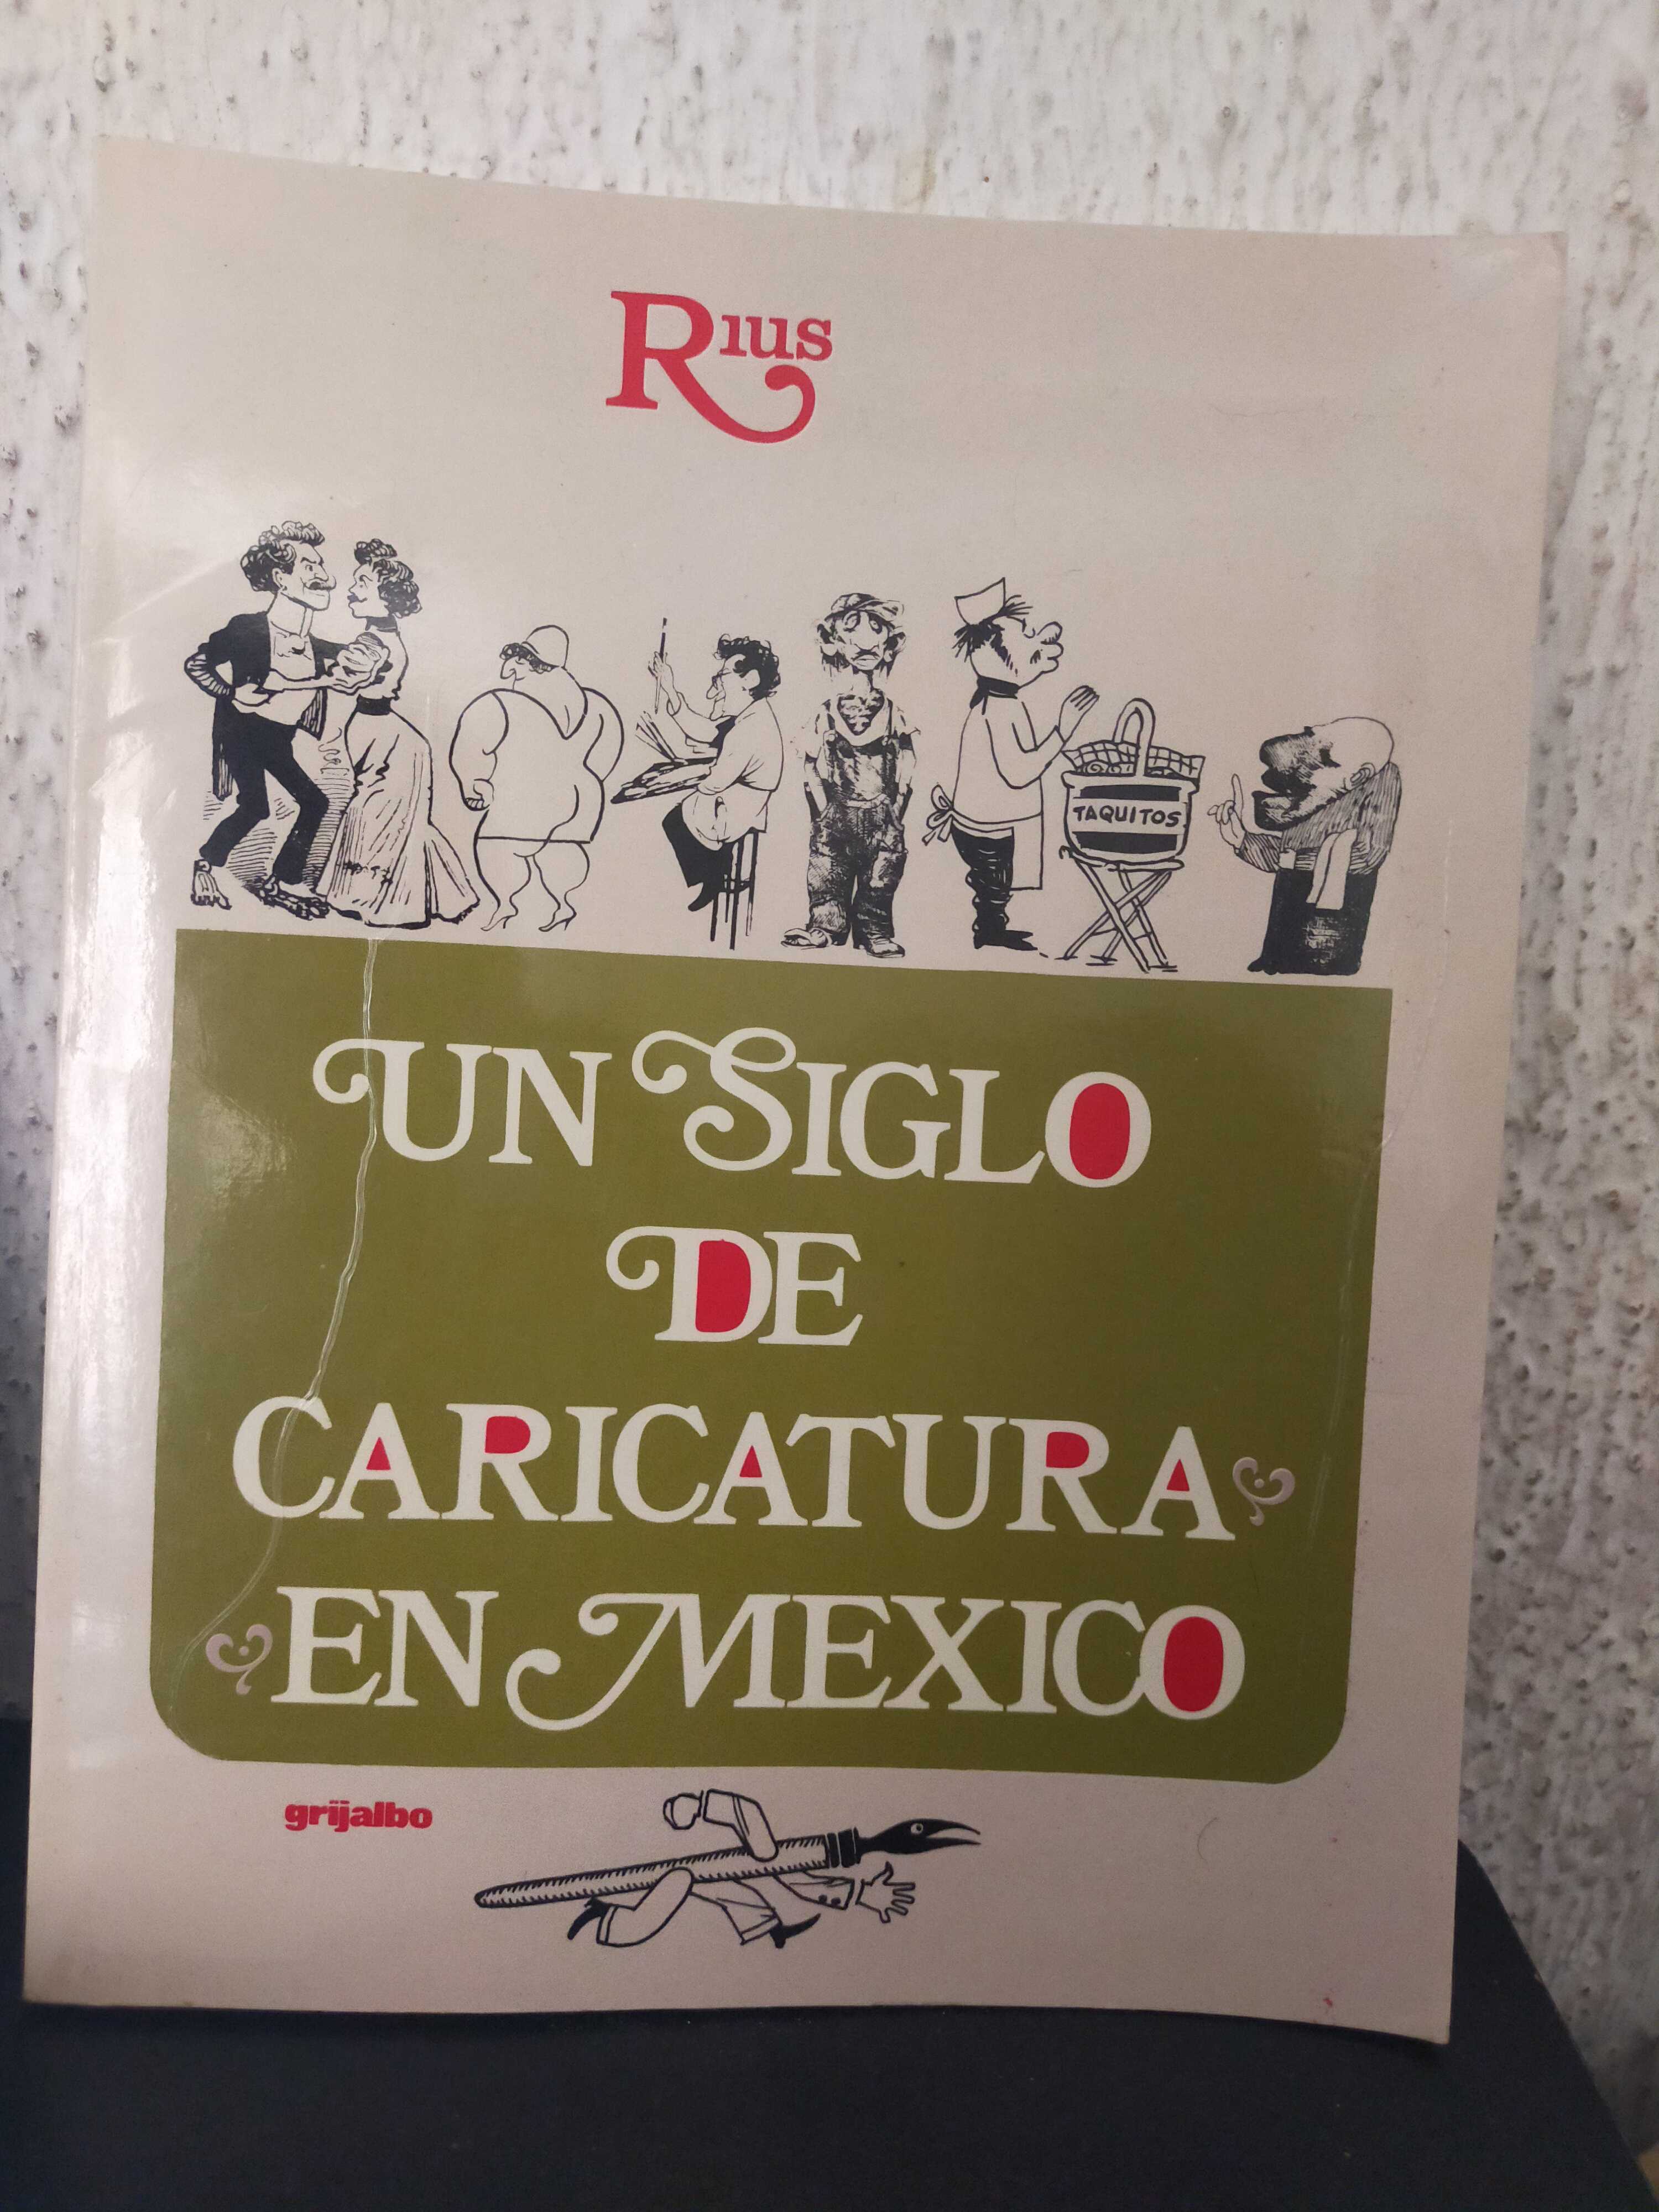  Un siglo de caricatura en MéxicoArtes